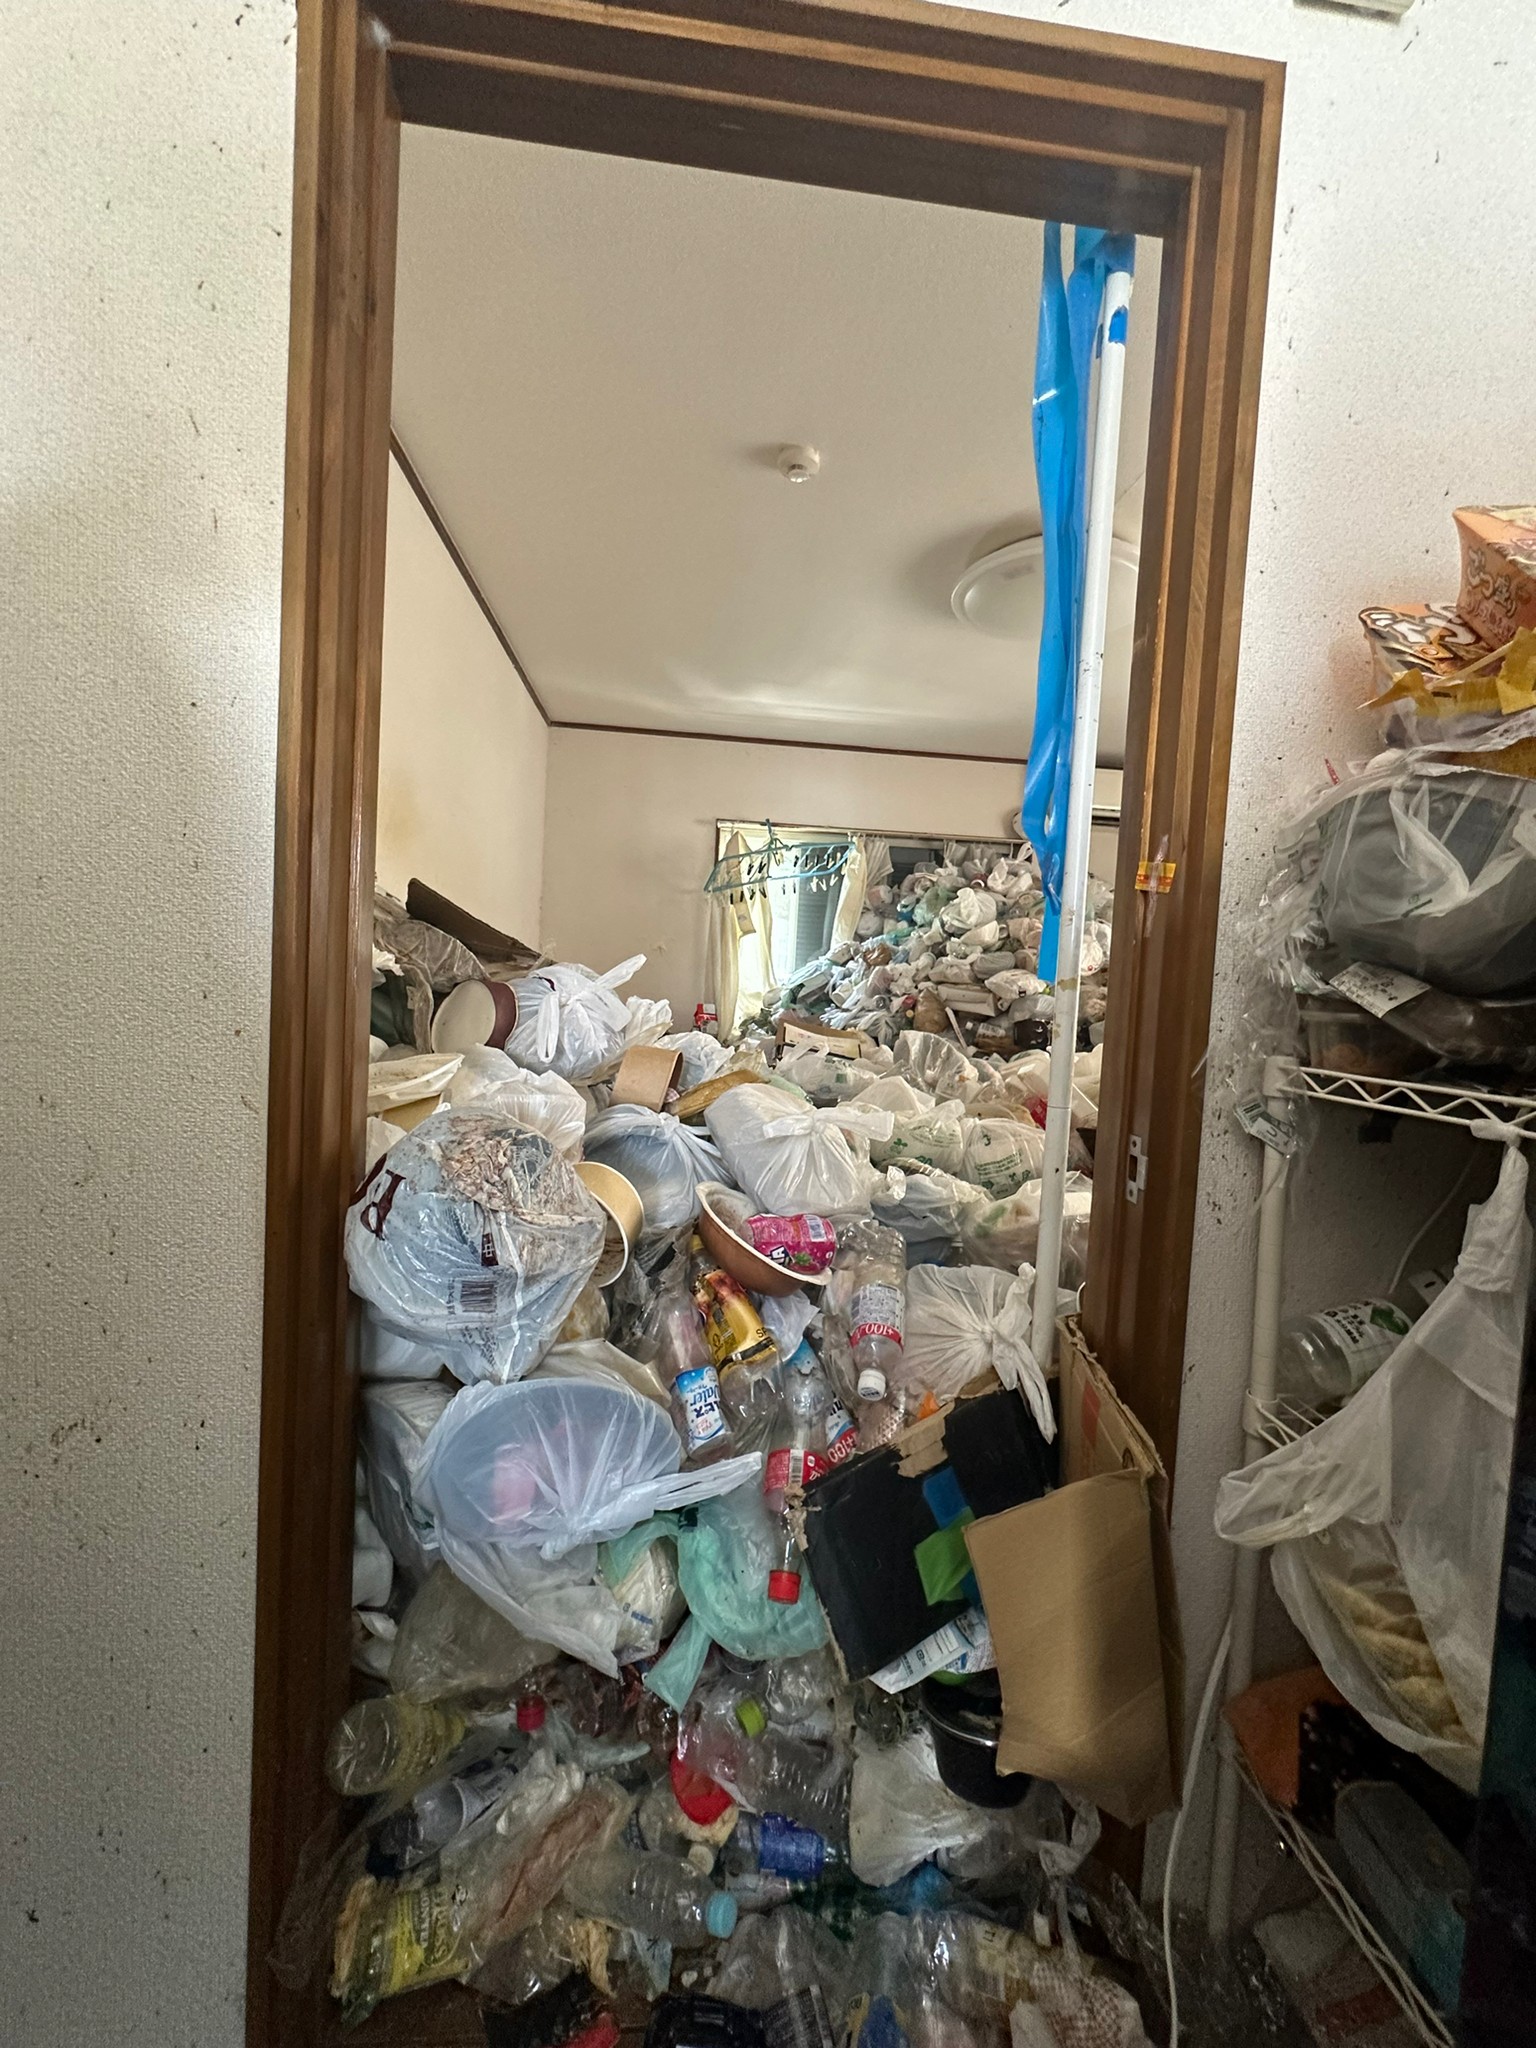 衣類、掃除機、プラケース、生活ゴミ、物干し竿の回収前の状態